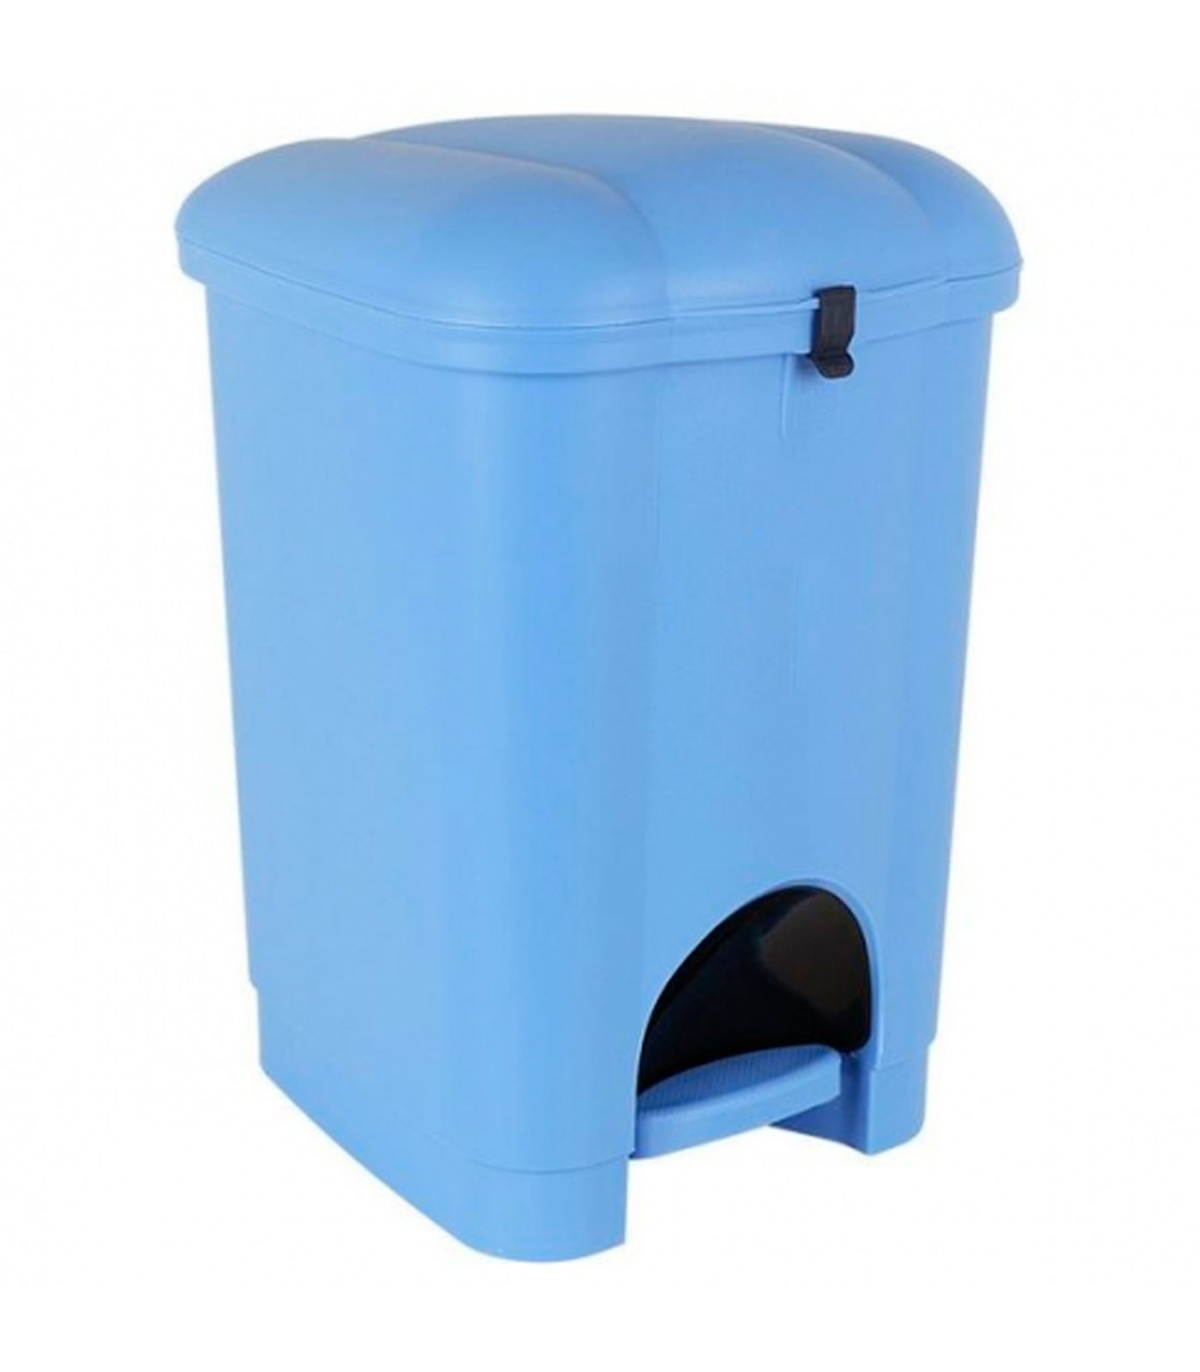 Tradineur - Cubo de basura con pedal y recipiente interior, plástico,  contenedor de residuos, papelera de cocina, reciclaje (Azu